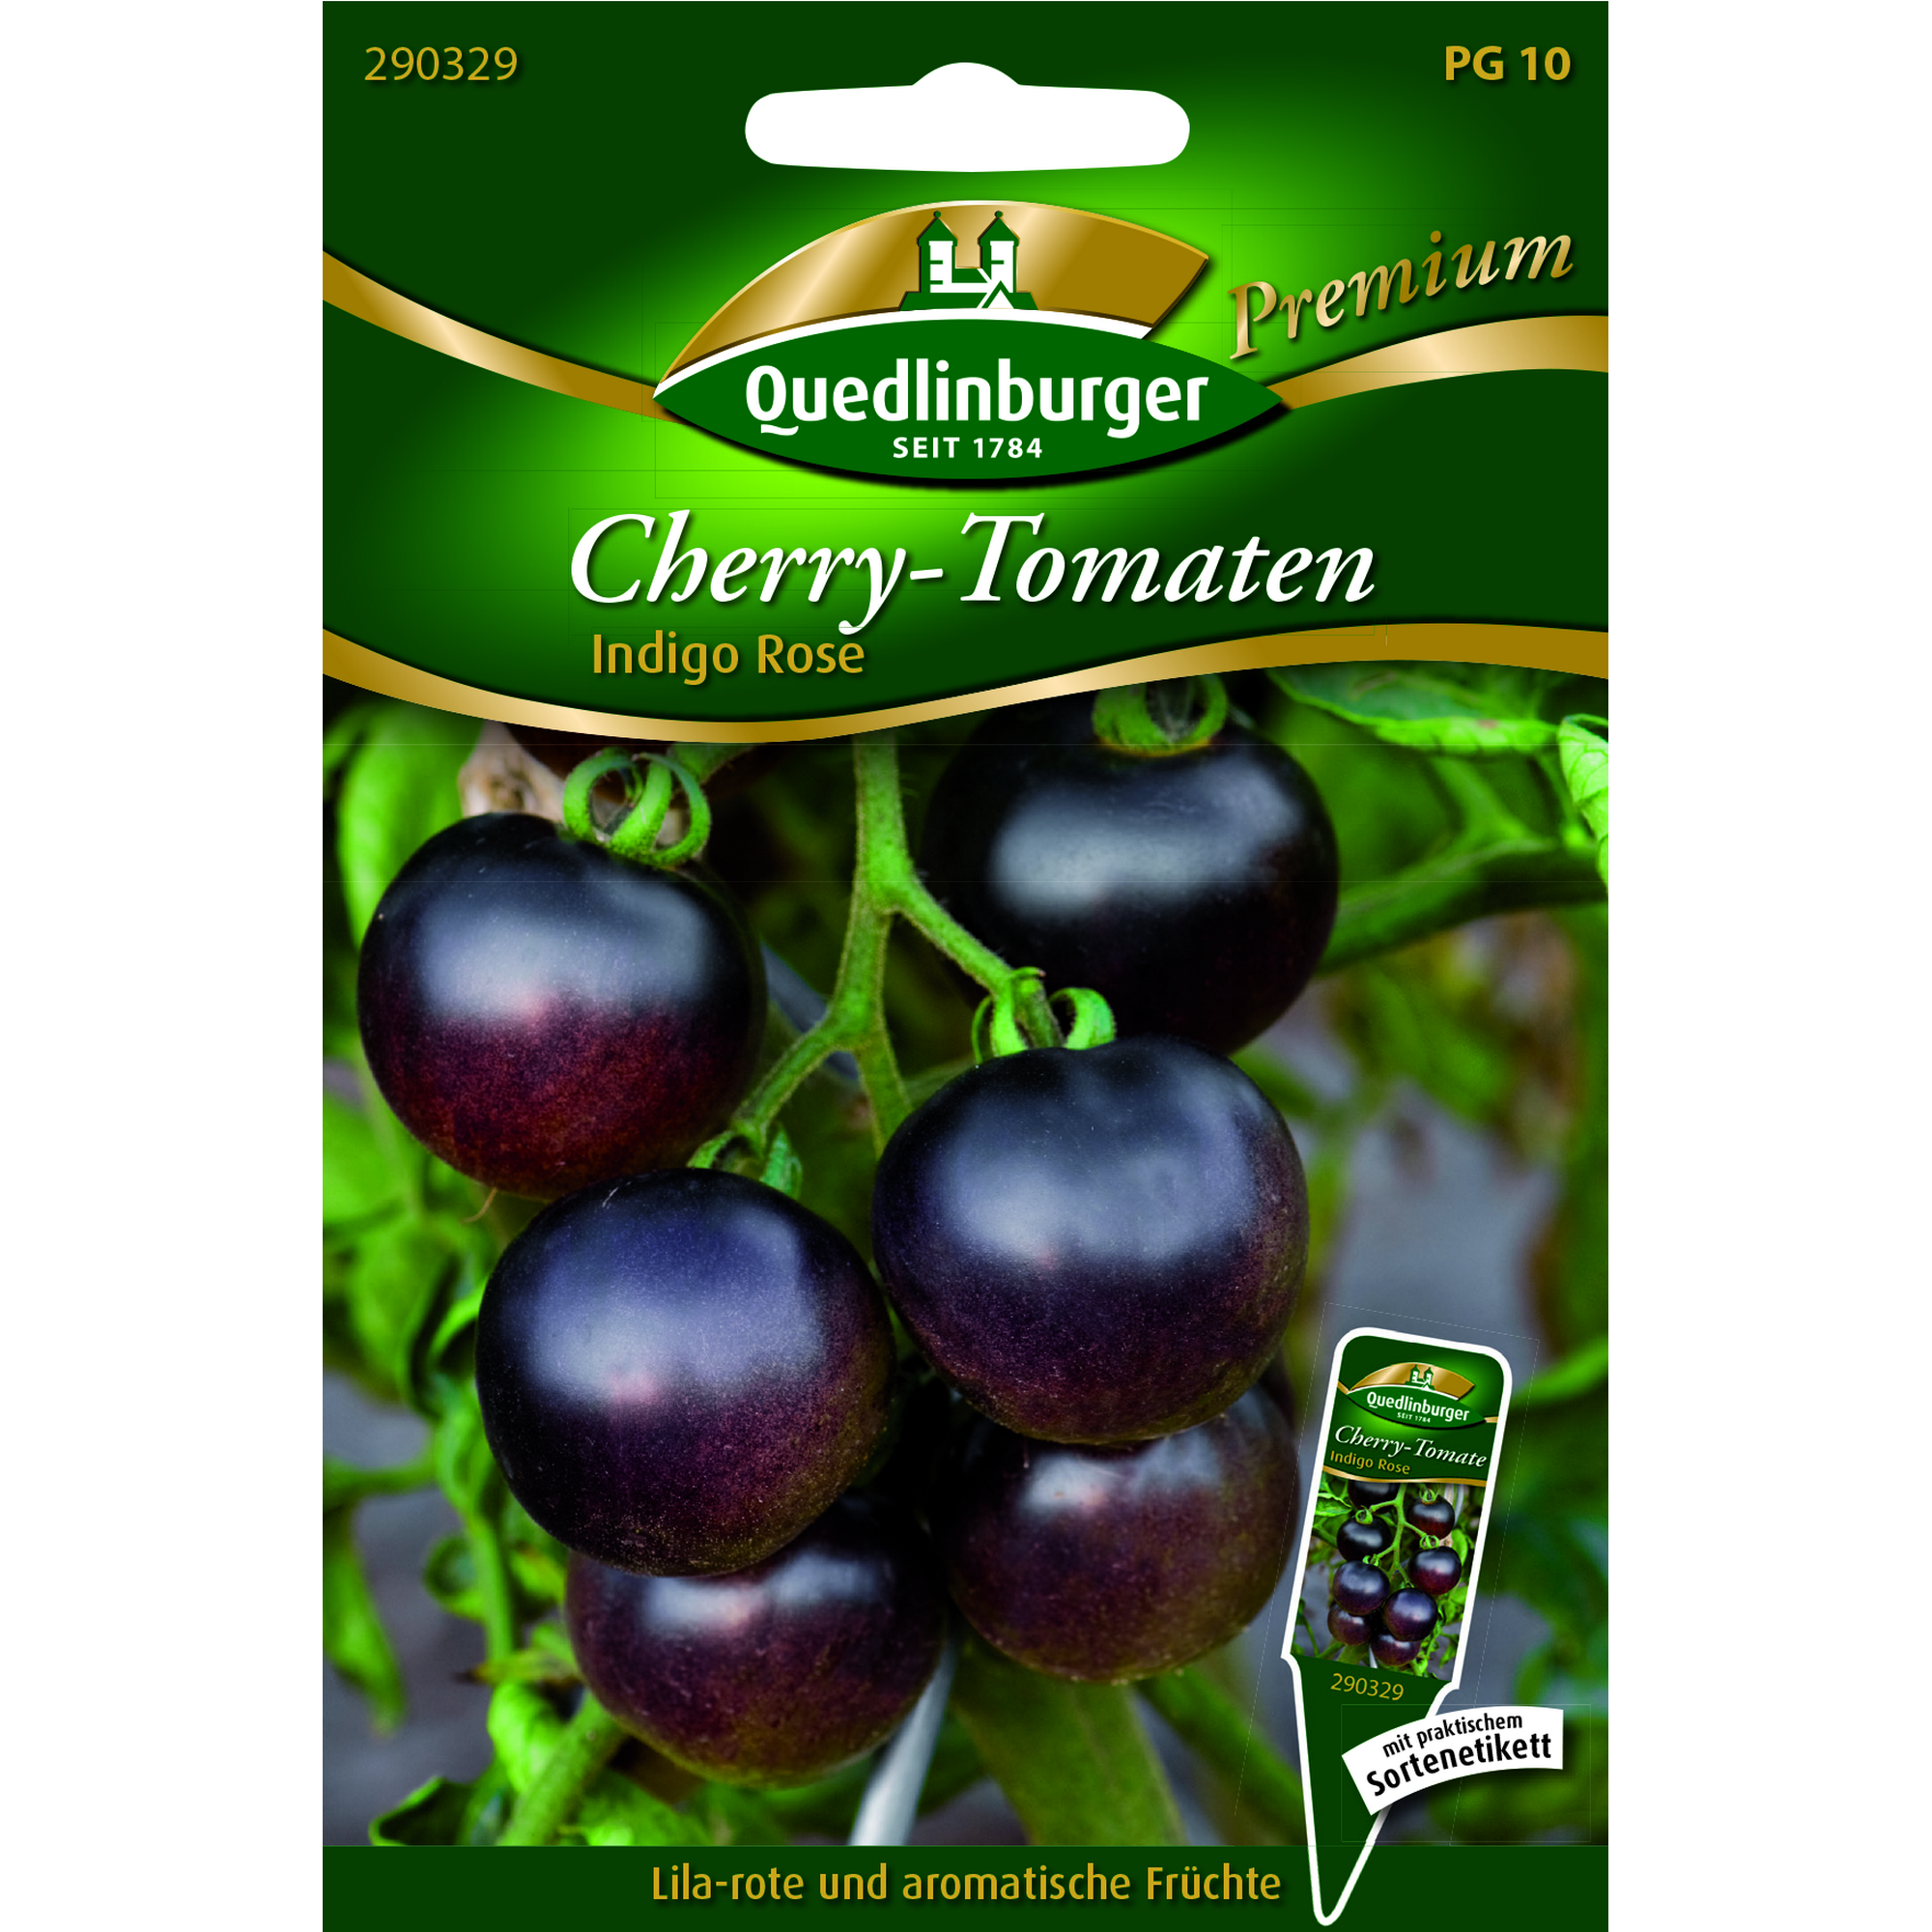 Premium Cherrytomate 'Indigo rose' + product picture